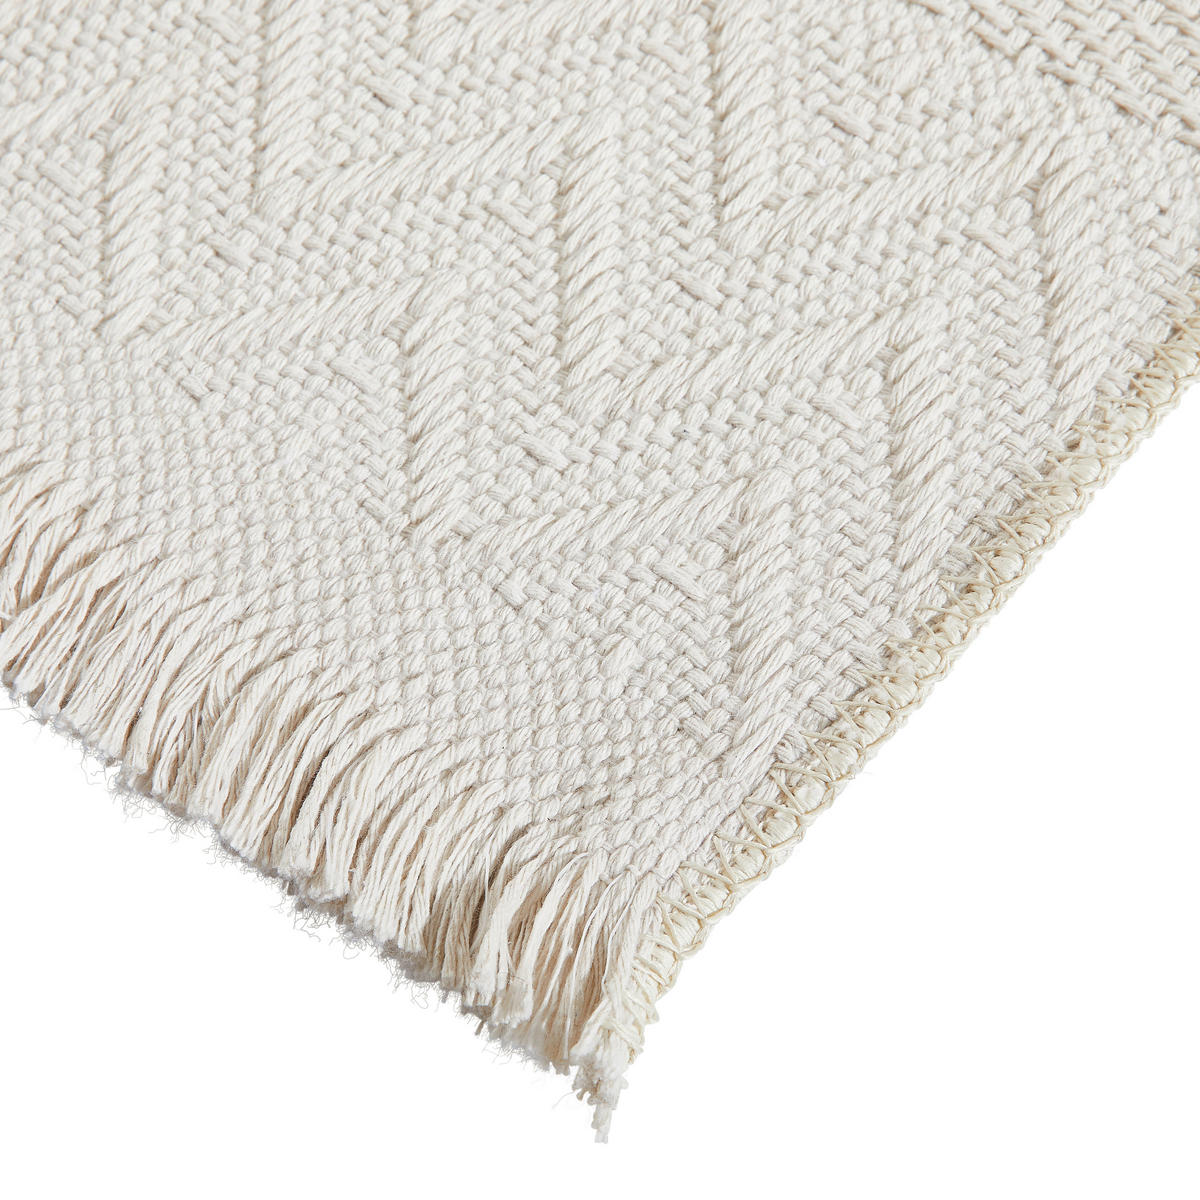 FLACHWEBETEPPICH 120/170 cm  - Weiß, Trend, Textil (120/170cm) - Linea Natura